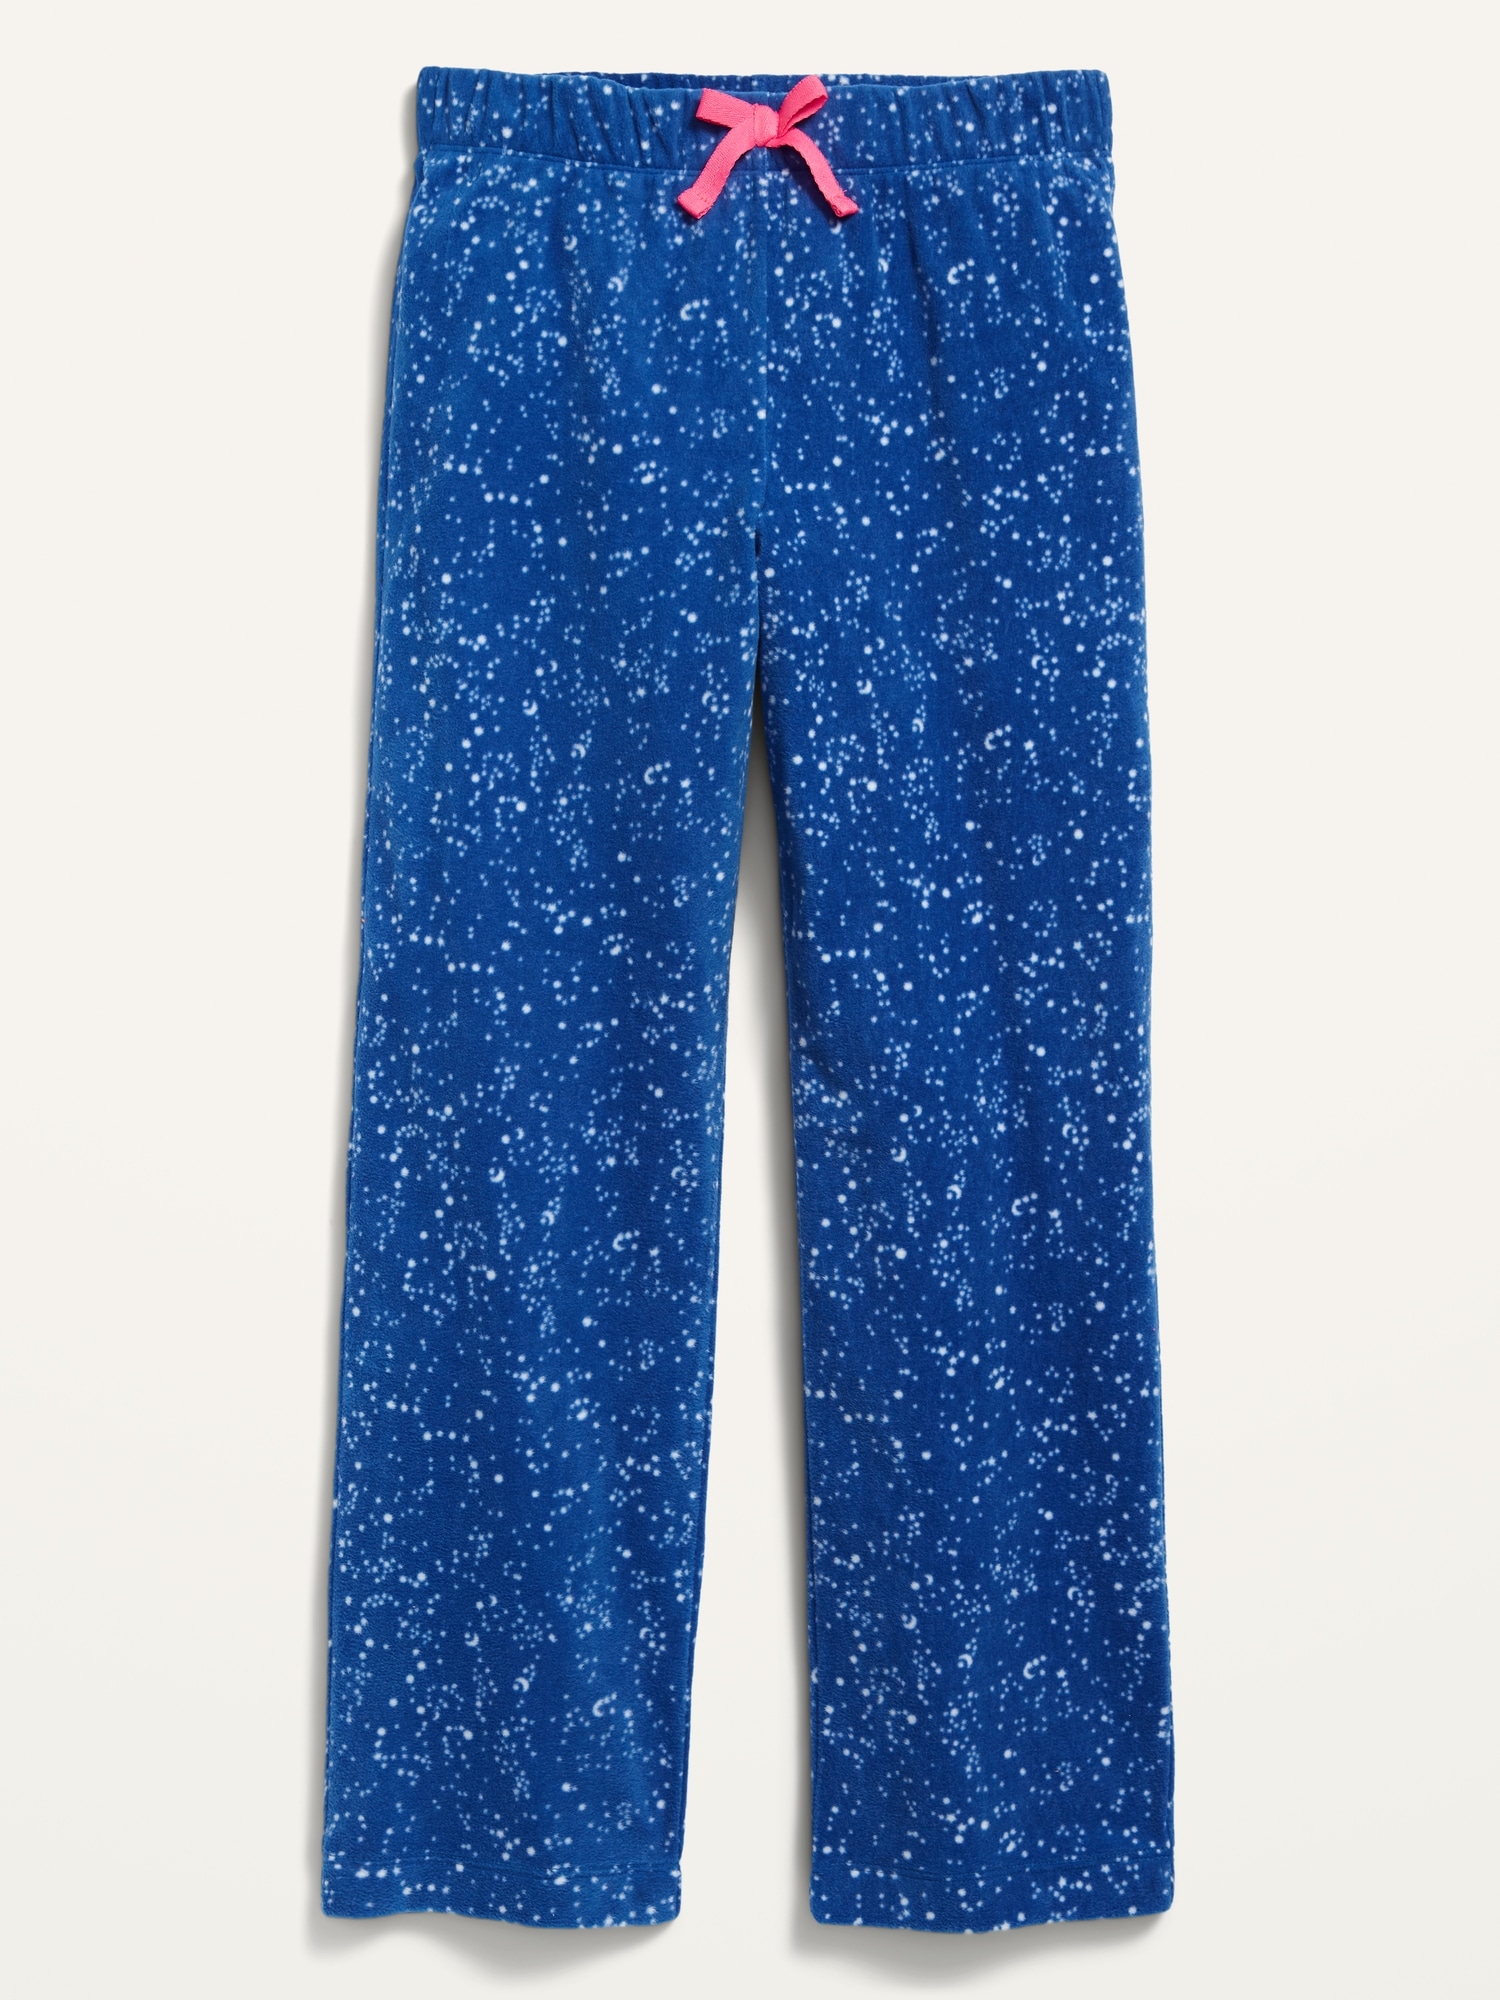 Girls S'more Print Fleece Pajama Pants